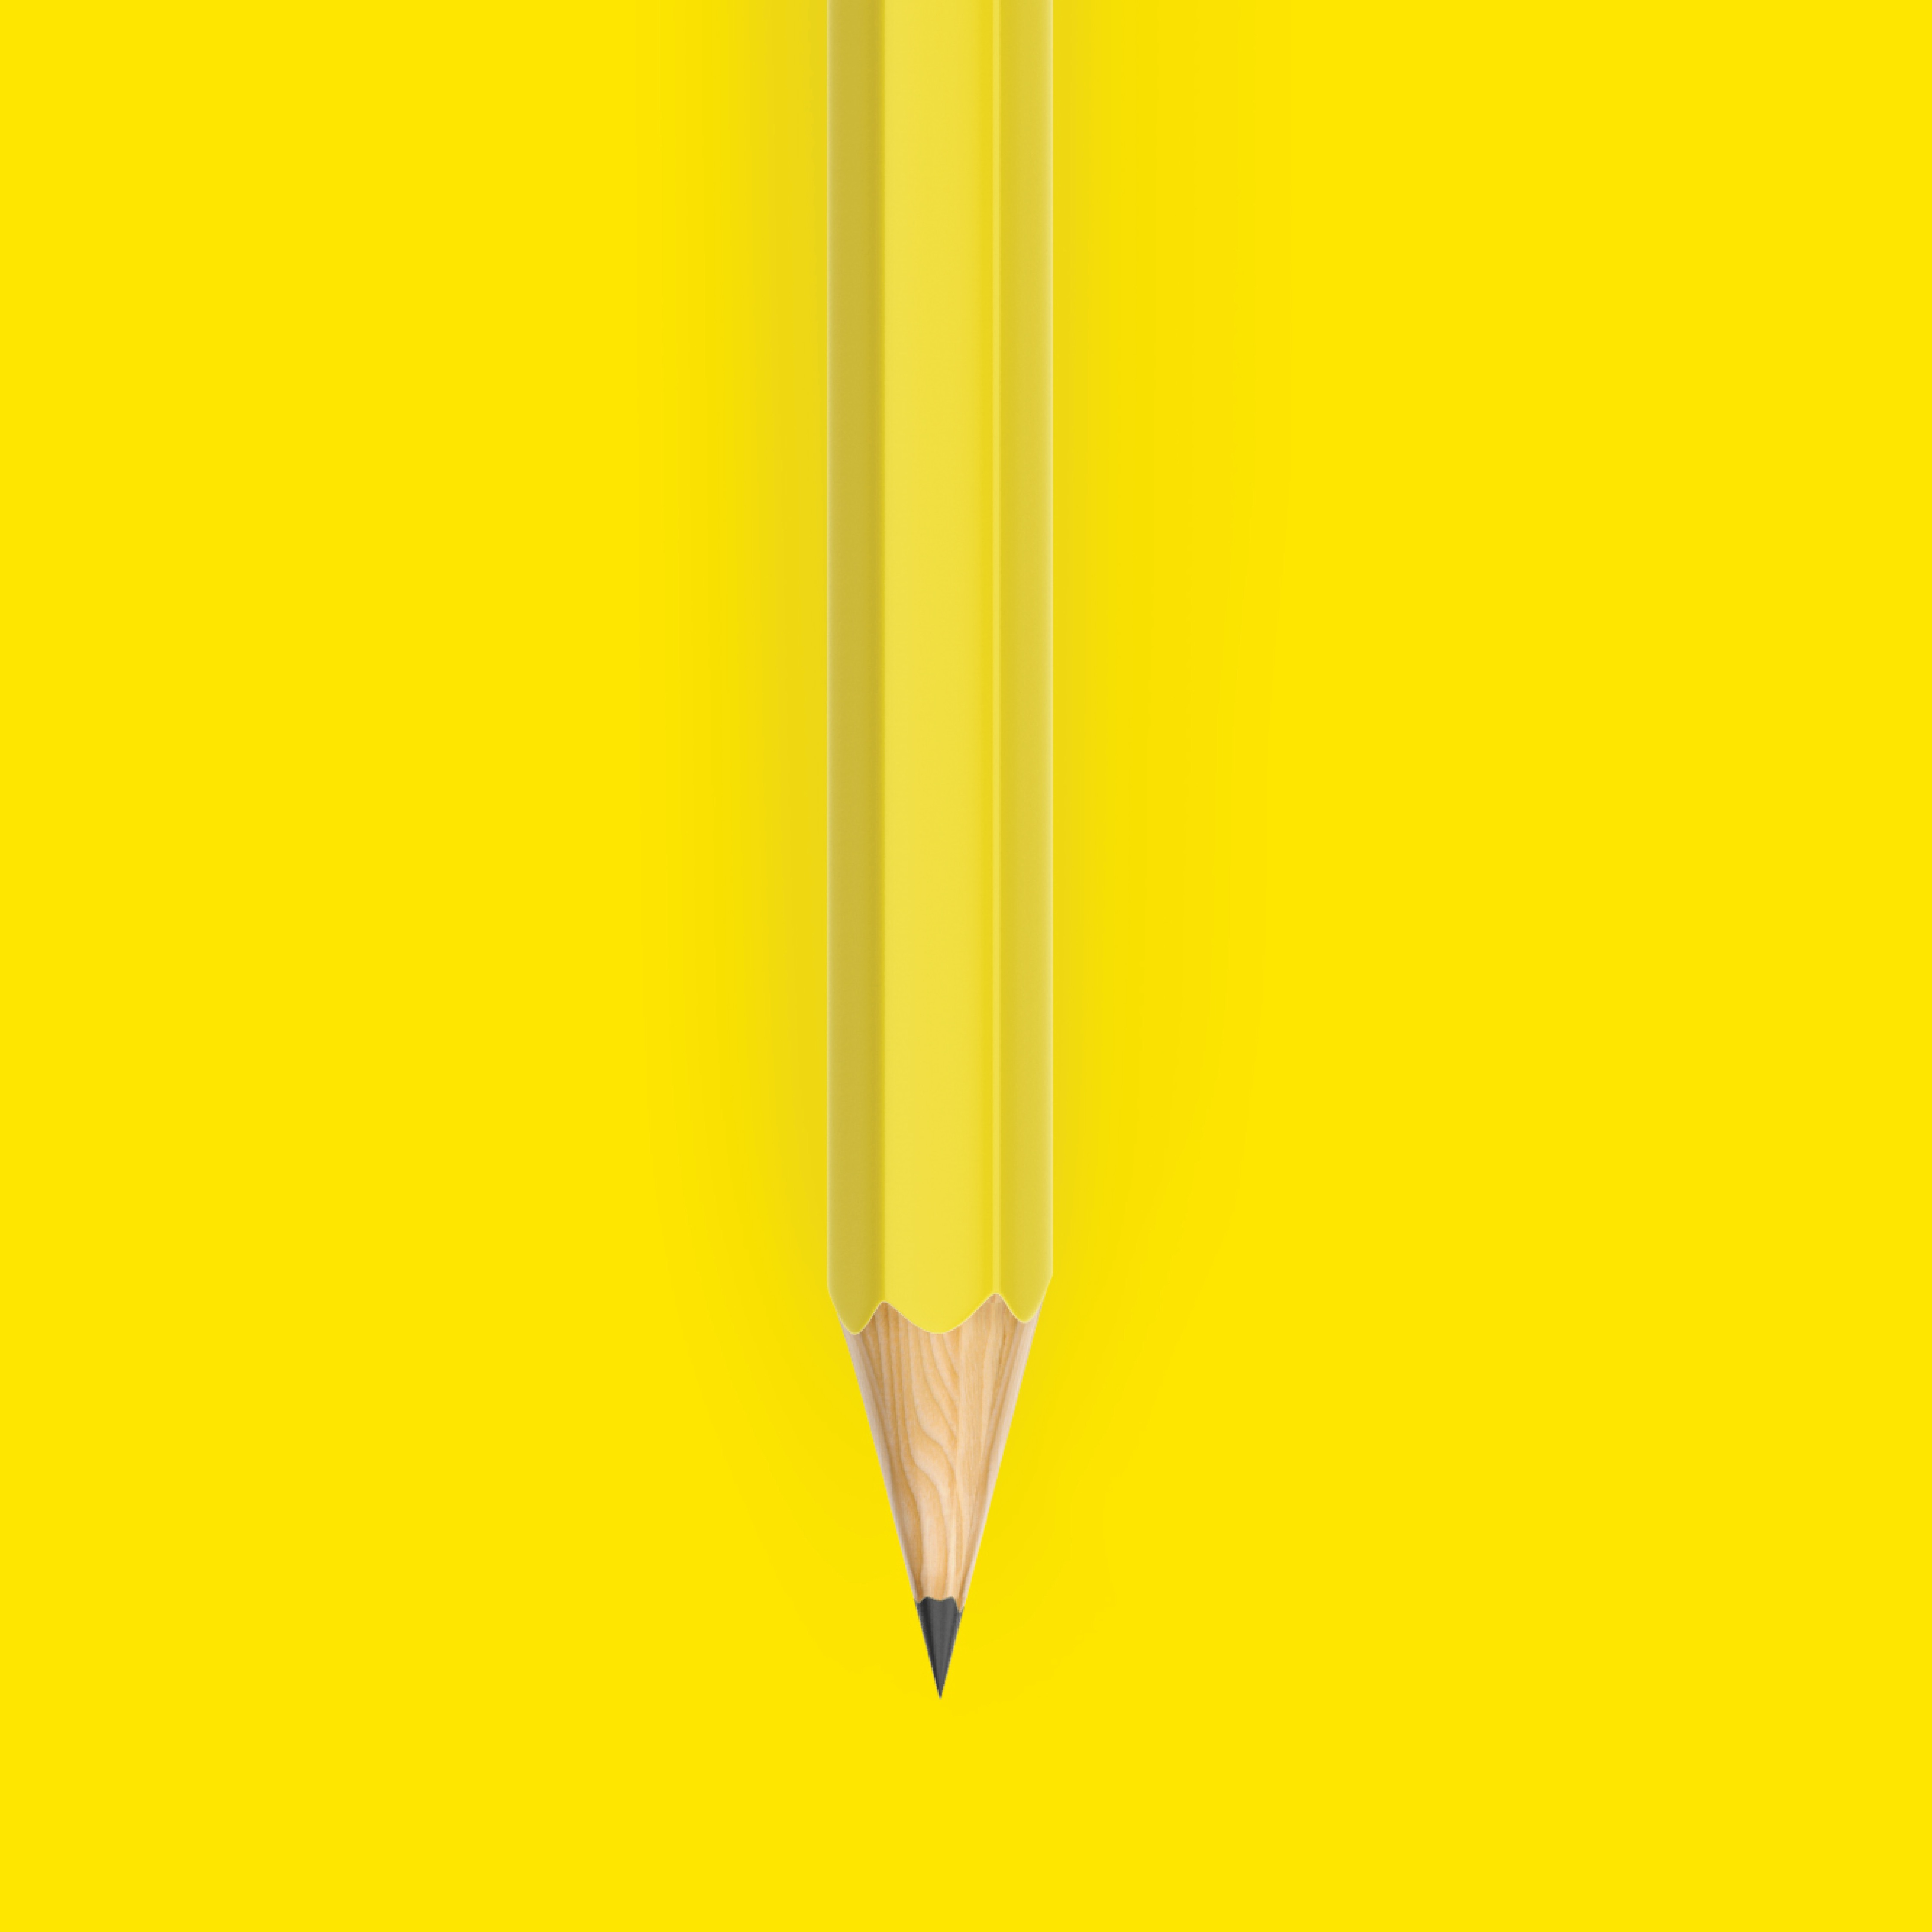 Second Half of a Pencil